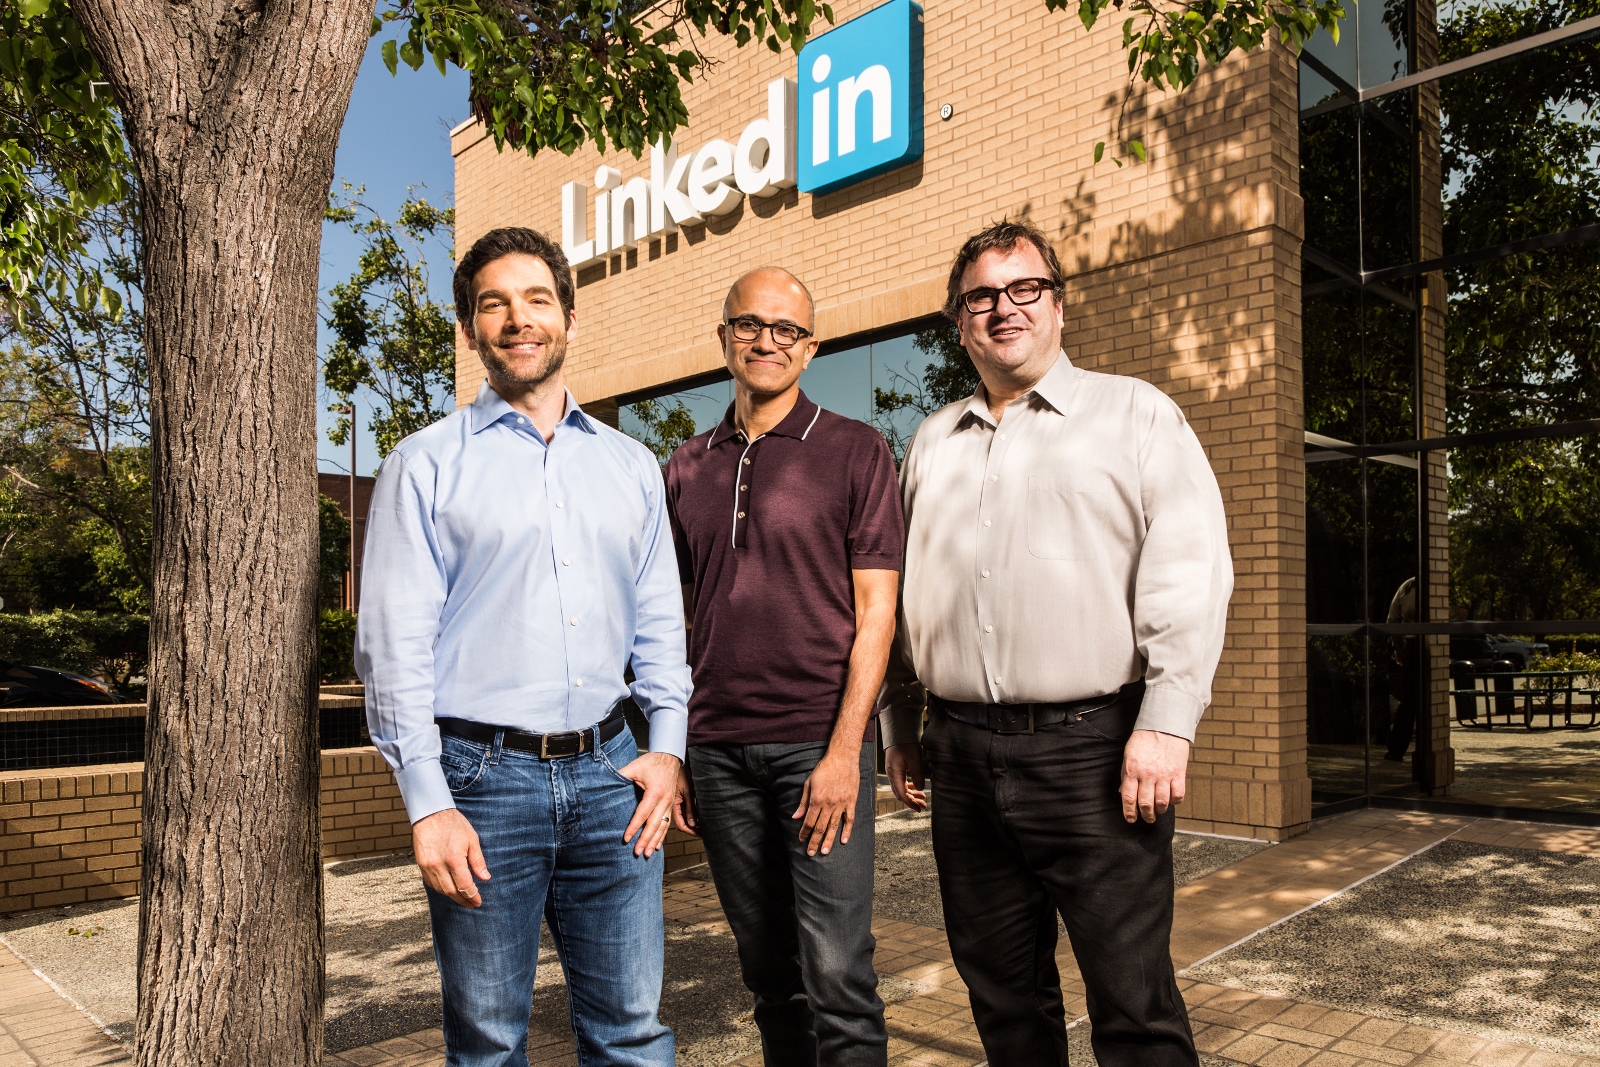 Microsoft to buy LinkedIn for $26.2B in cash, makes big move into enterprise social media